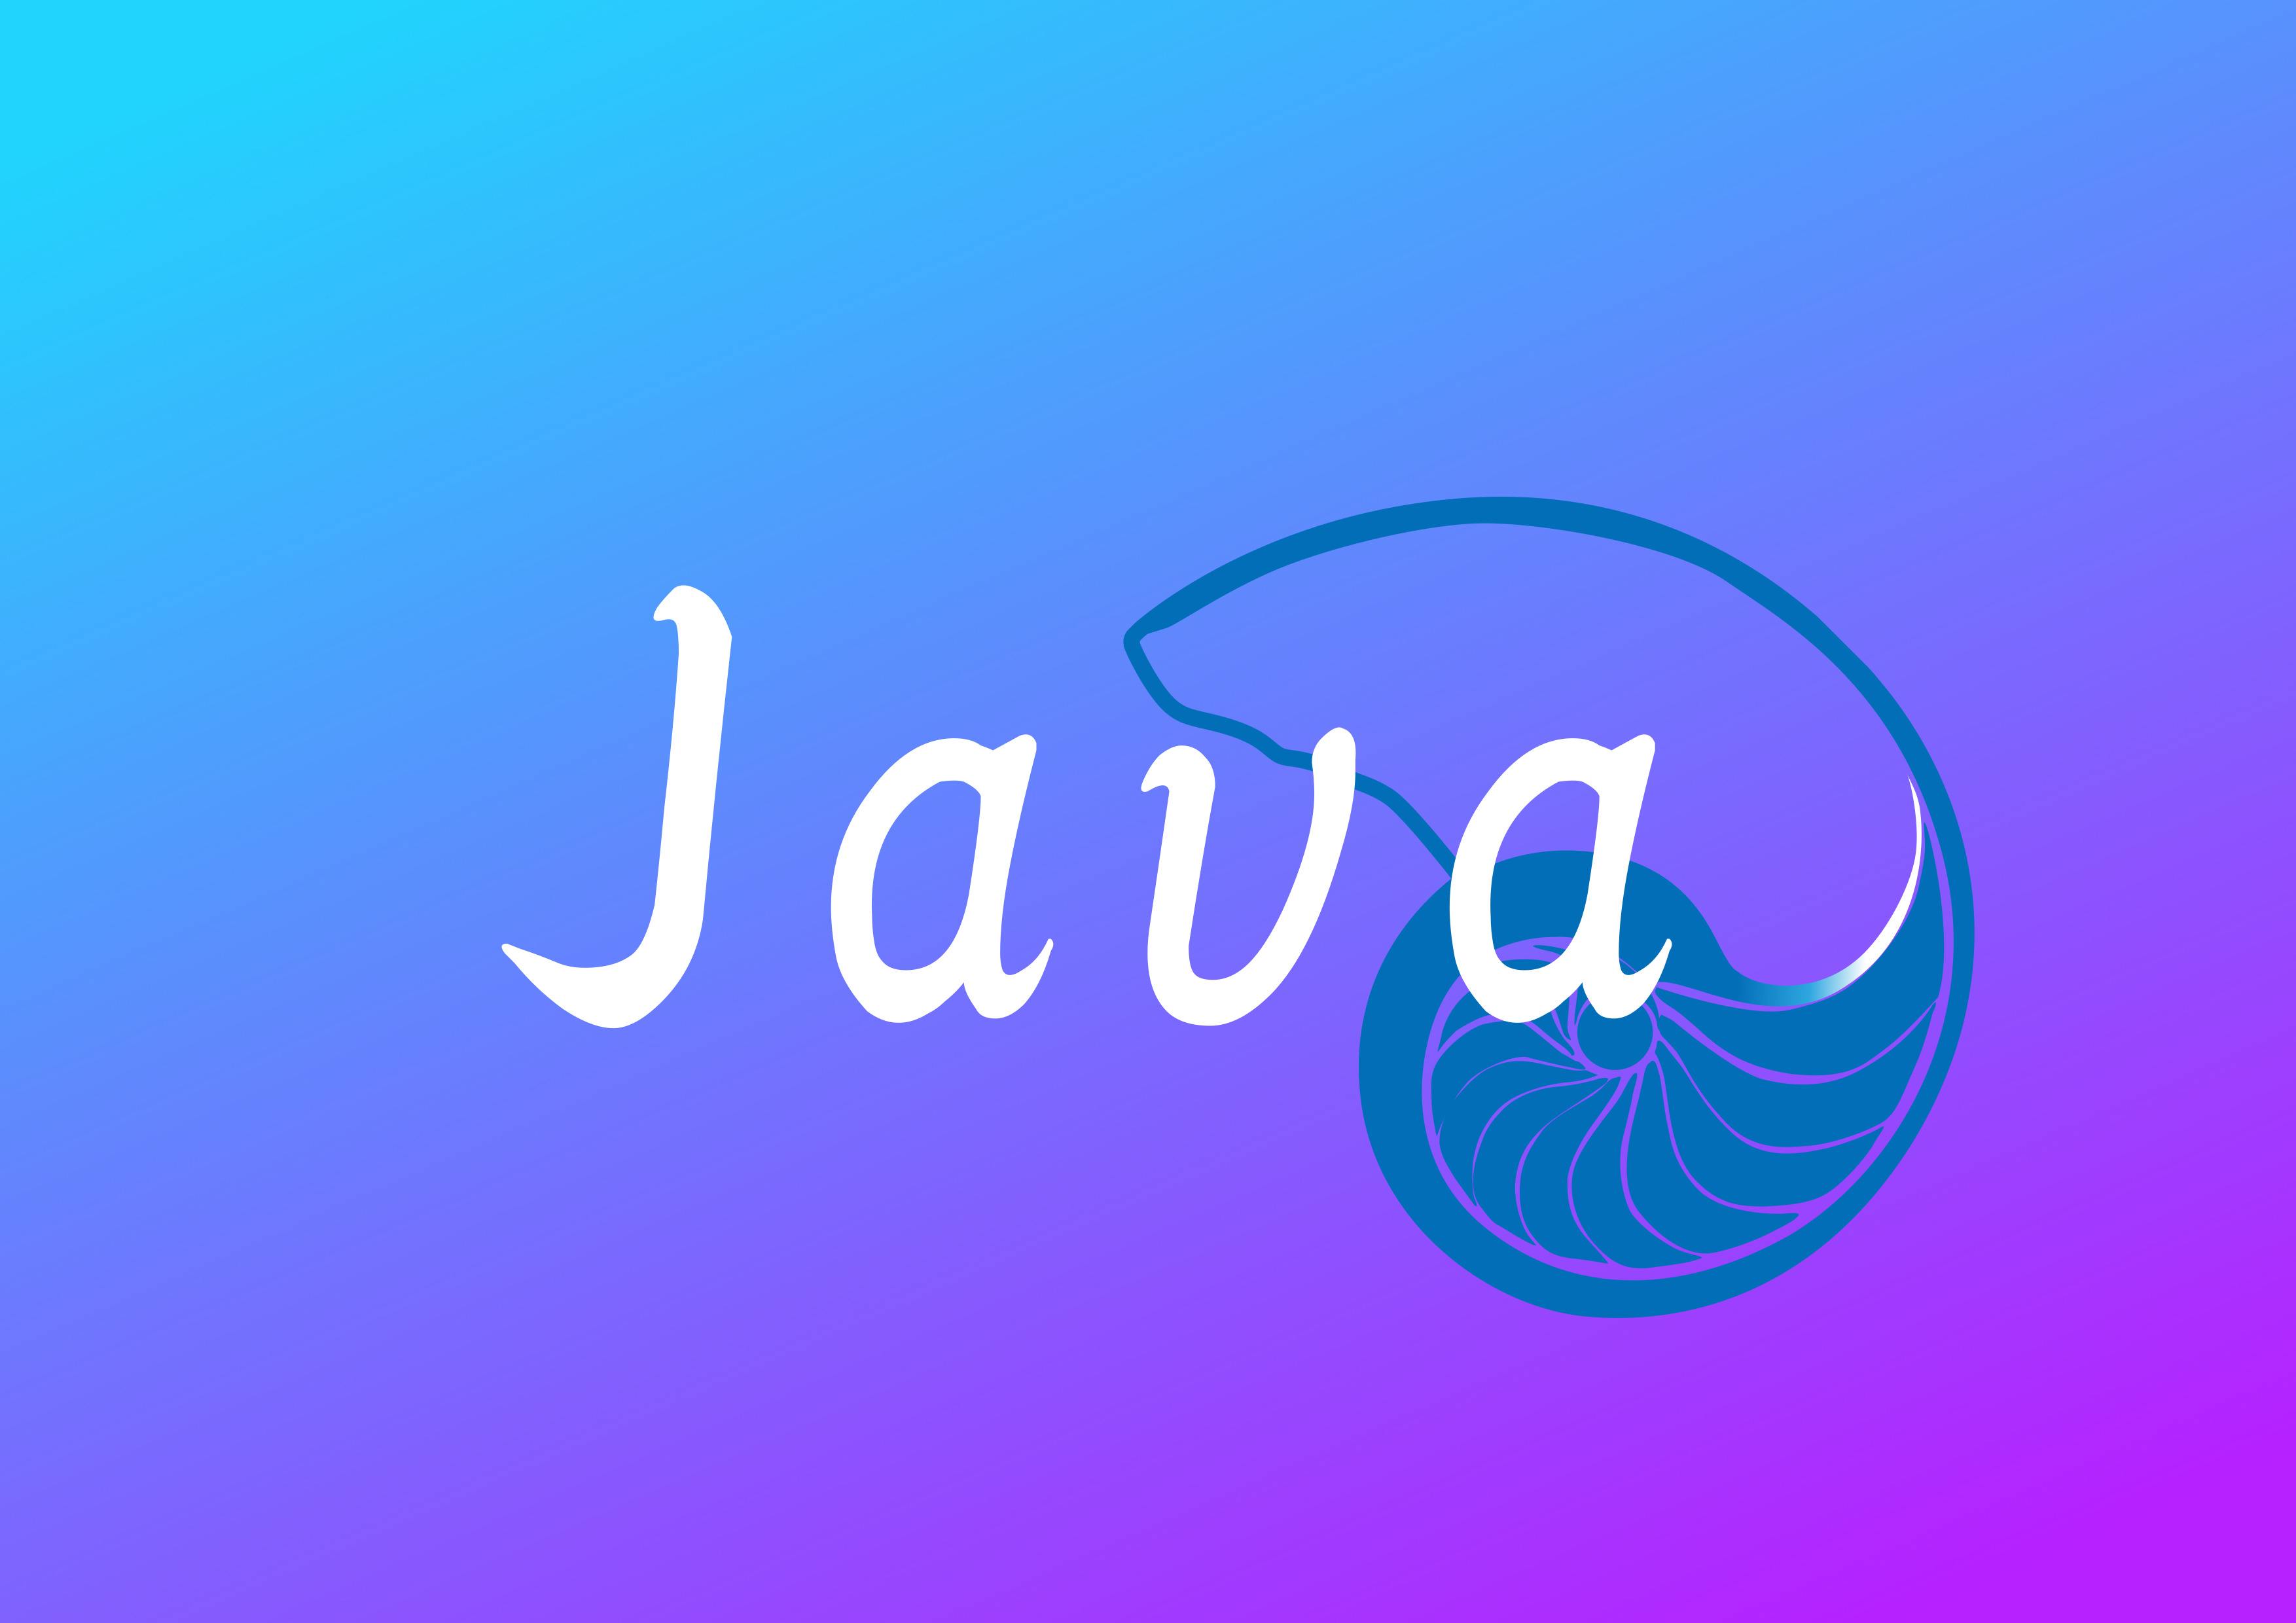 大部分人都认可java比c的编写代码速度快